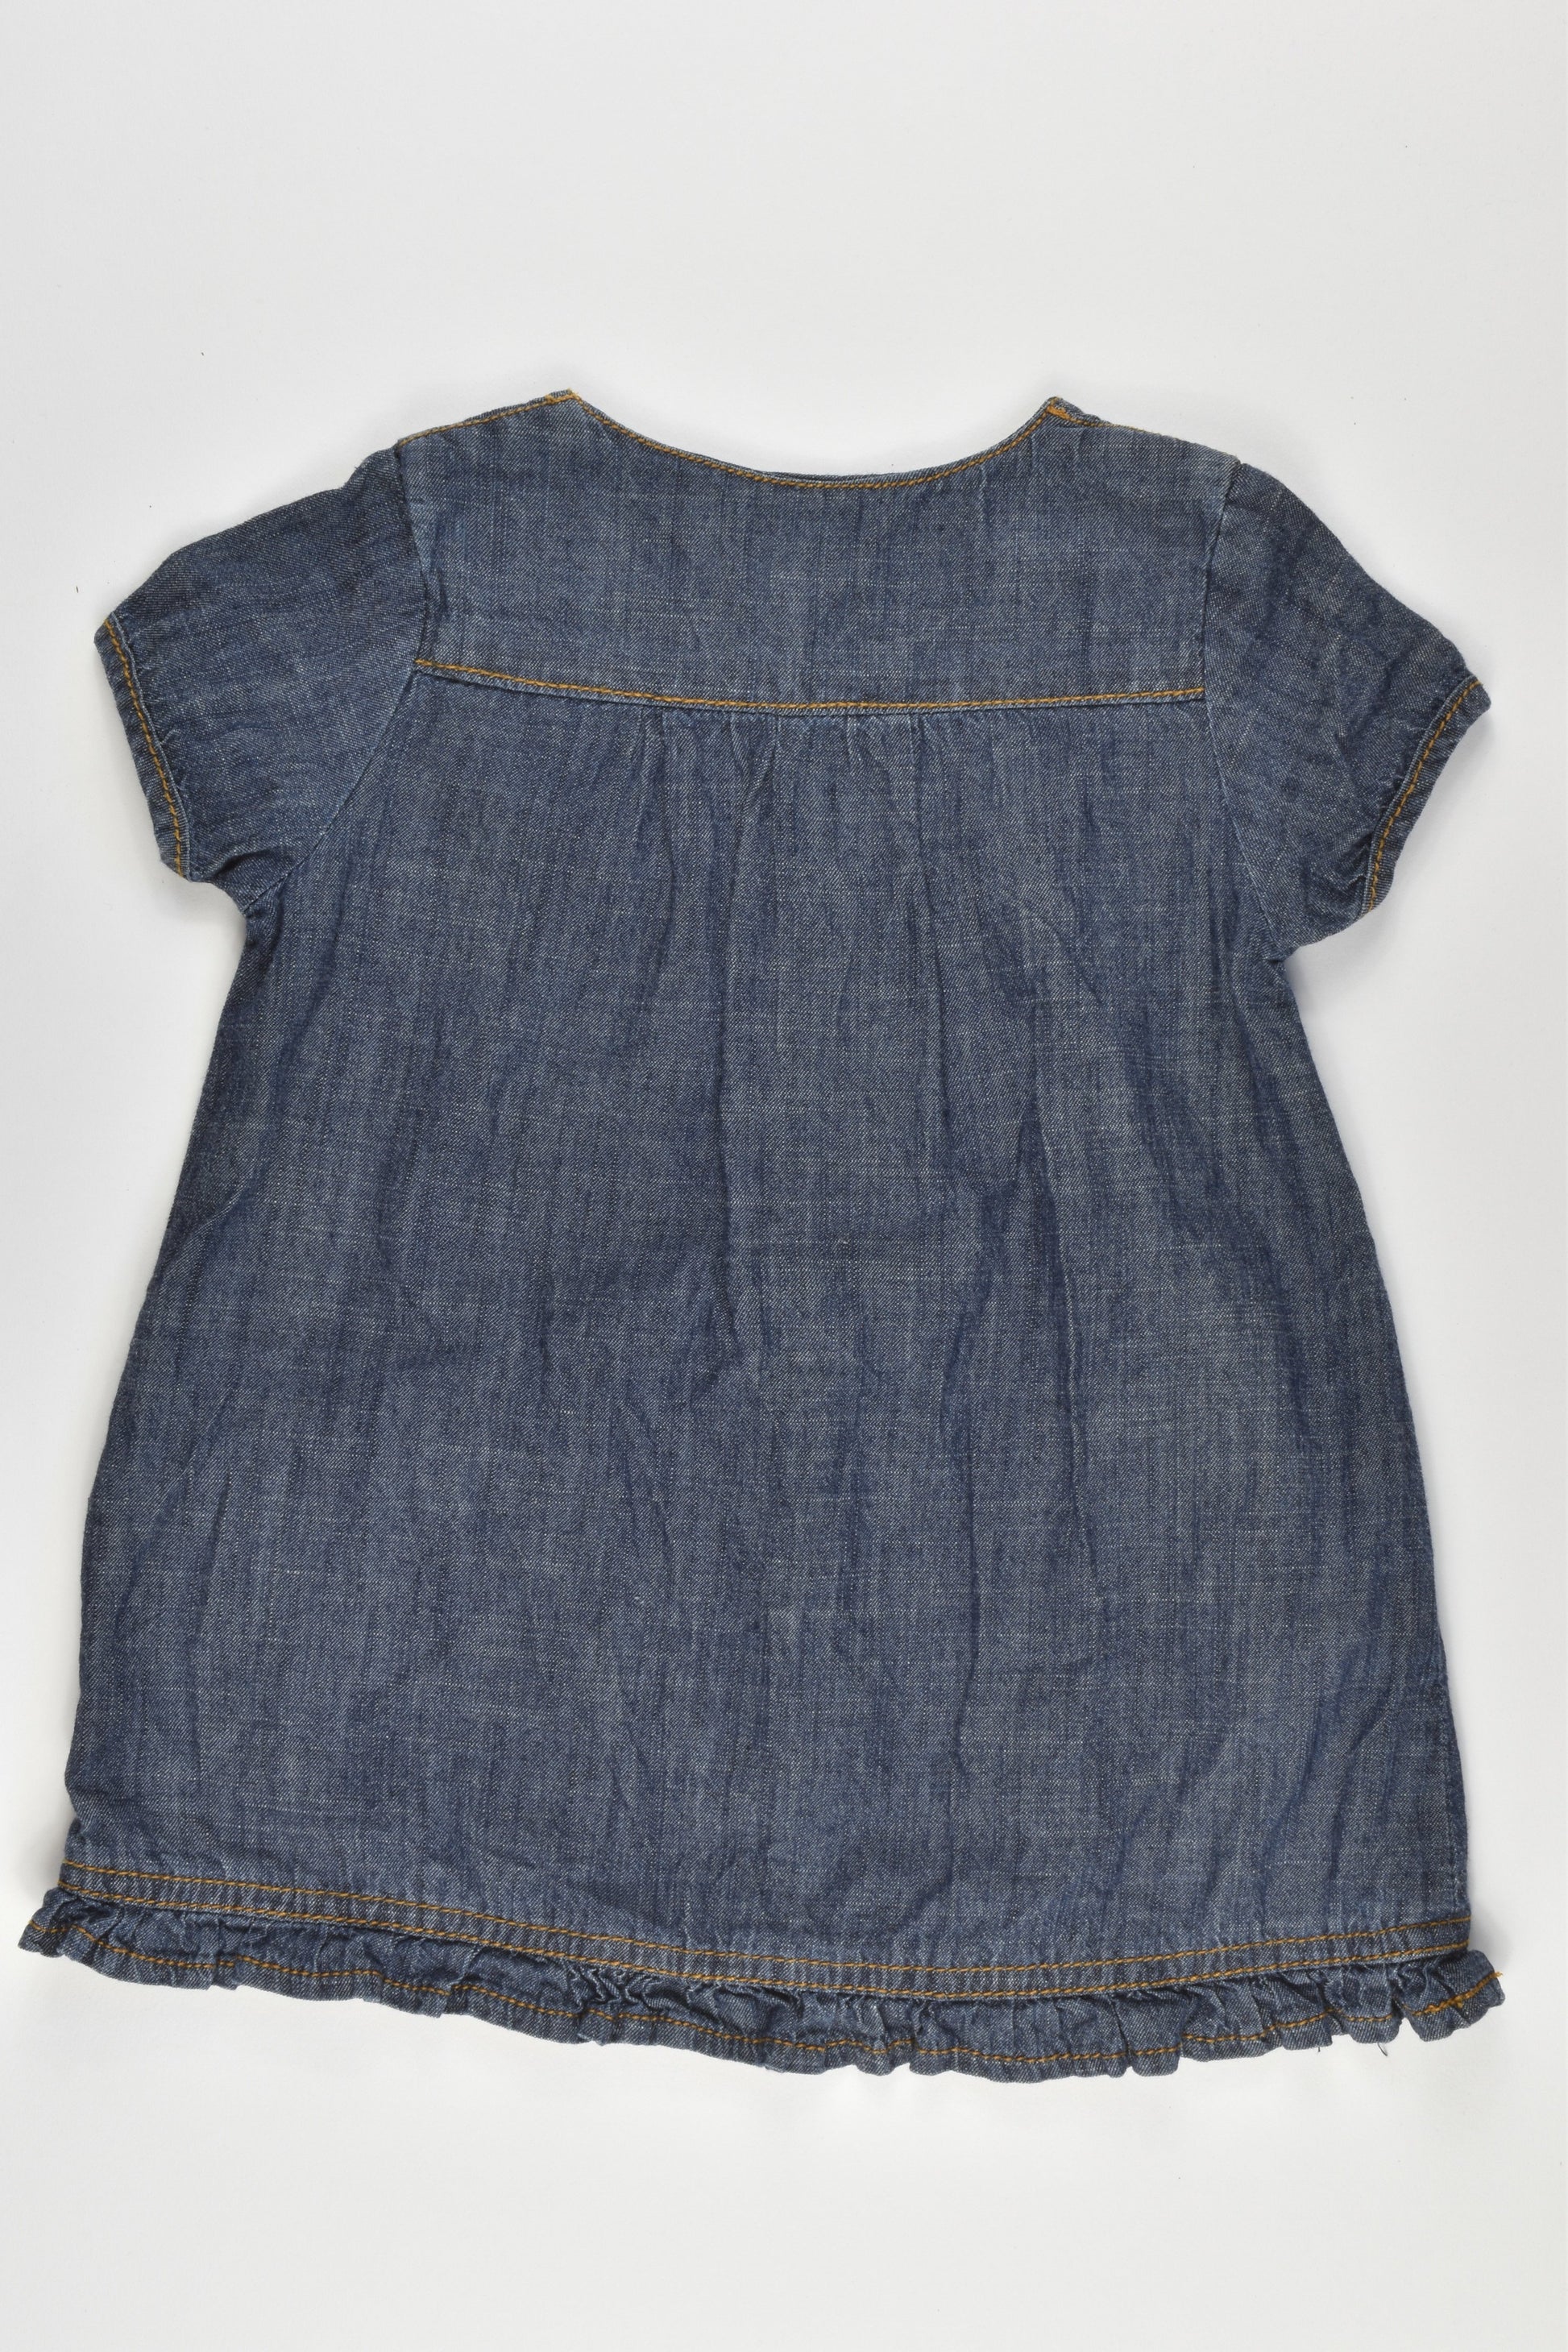 Obaïbi Size 0 (9 months) Soft Denim Dress